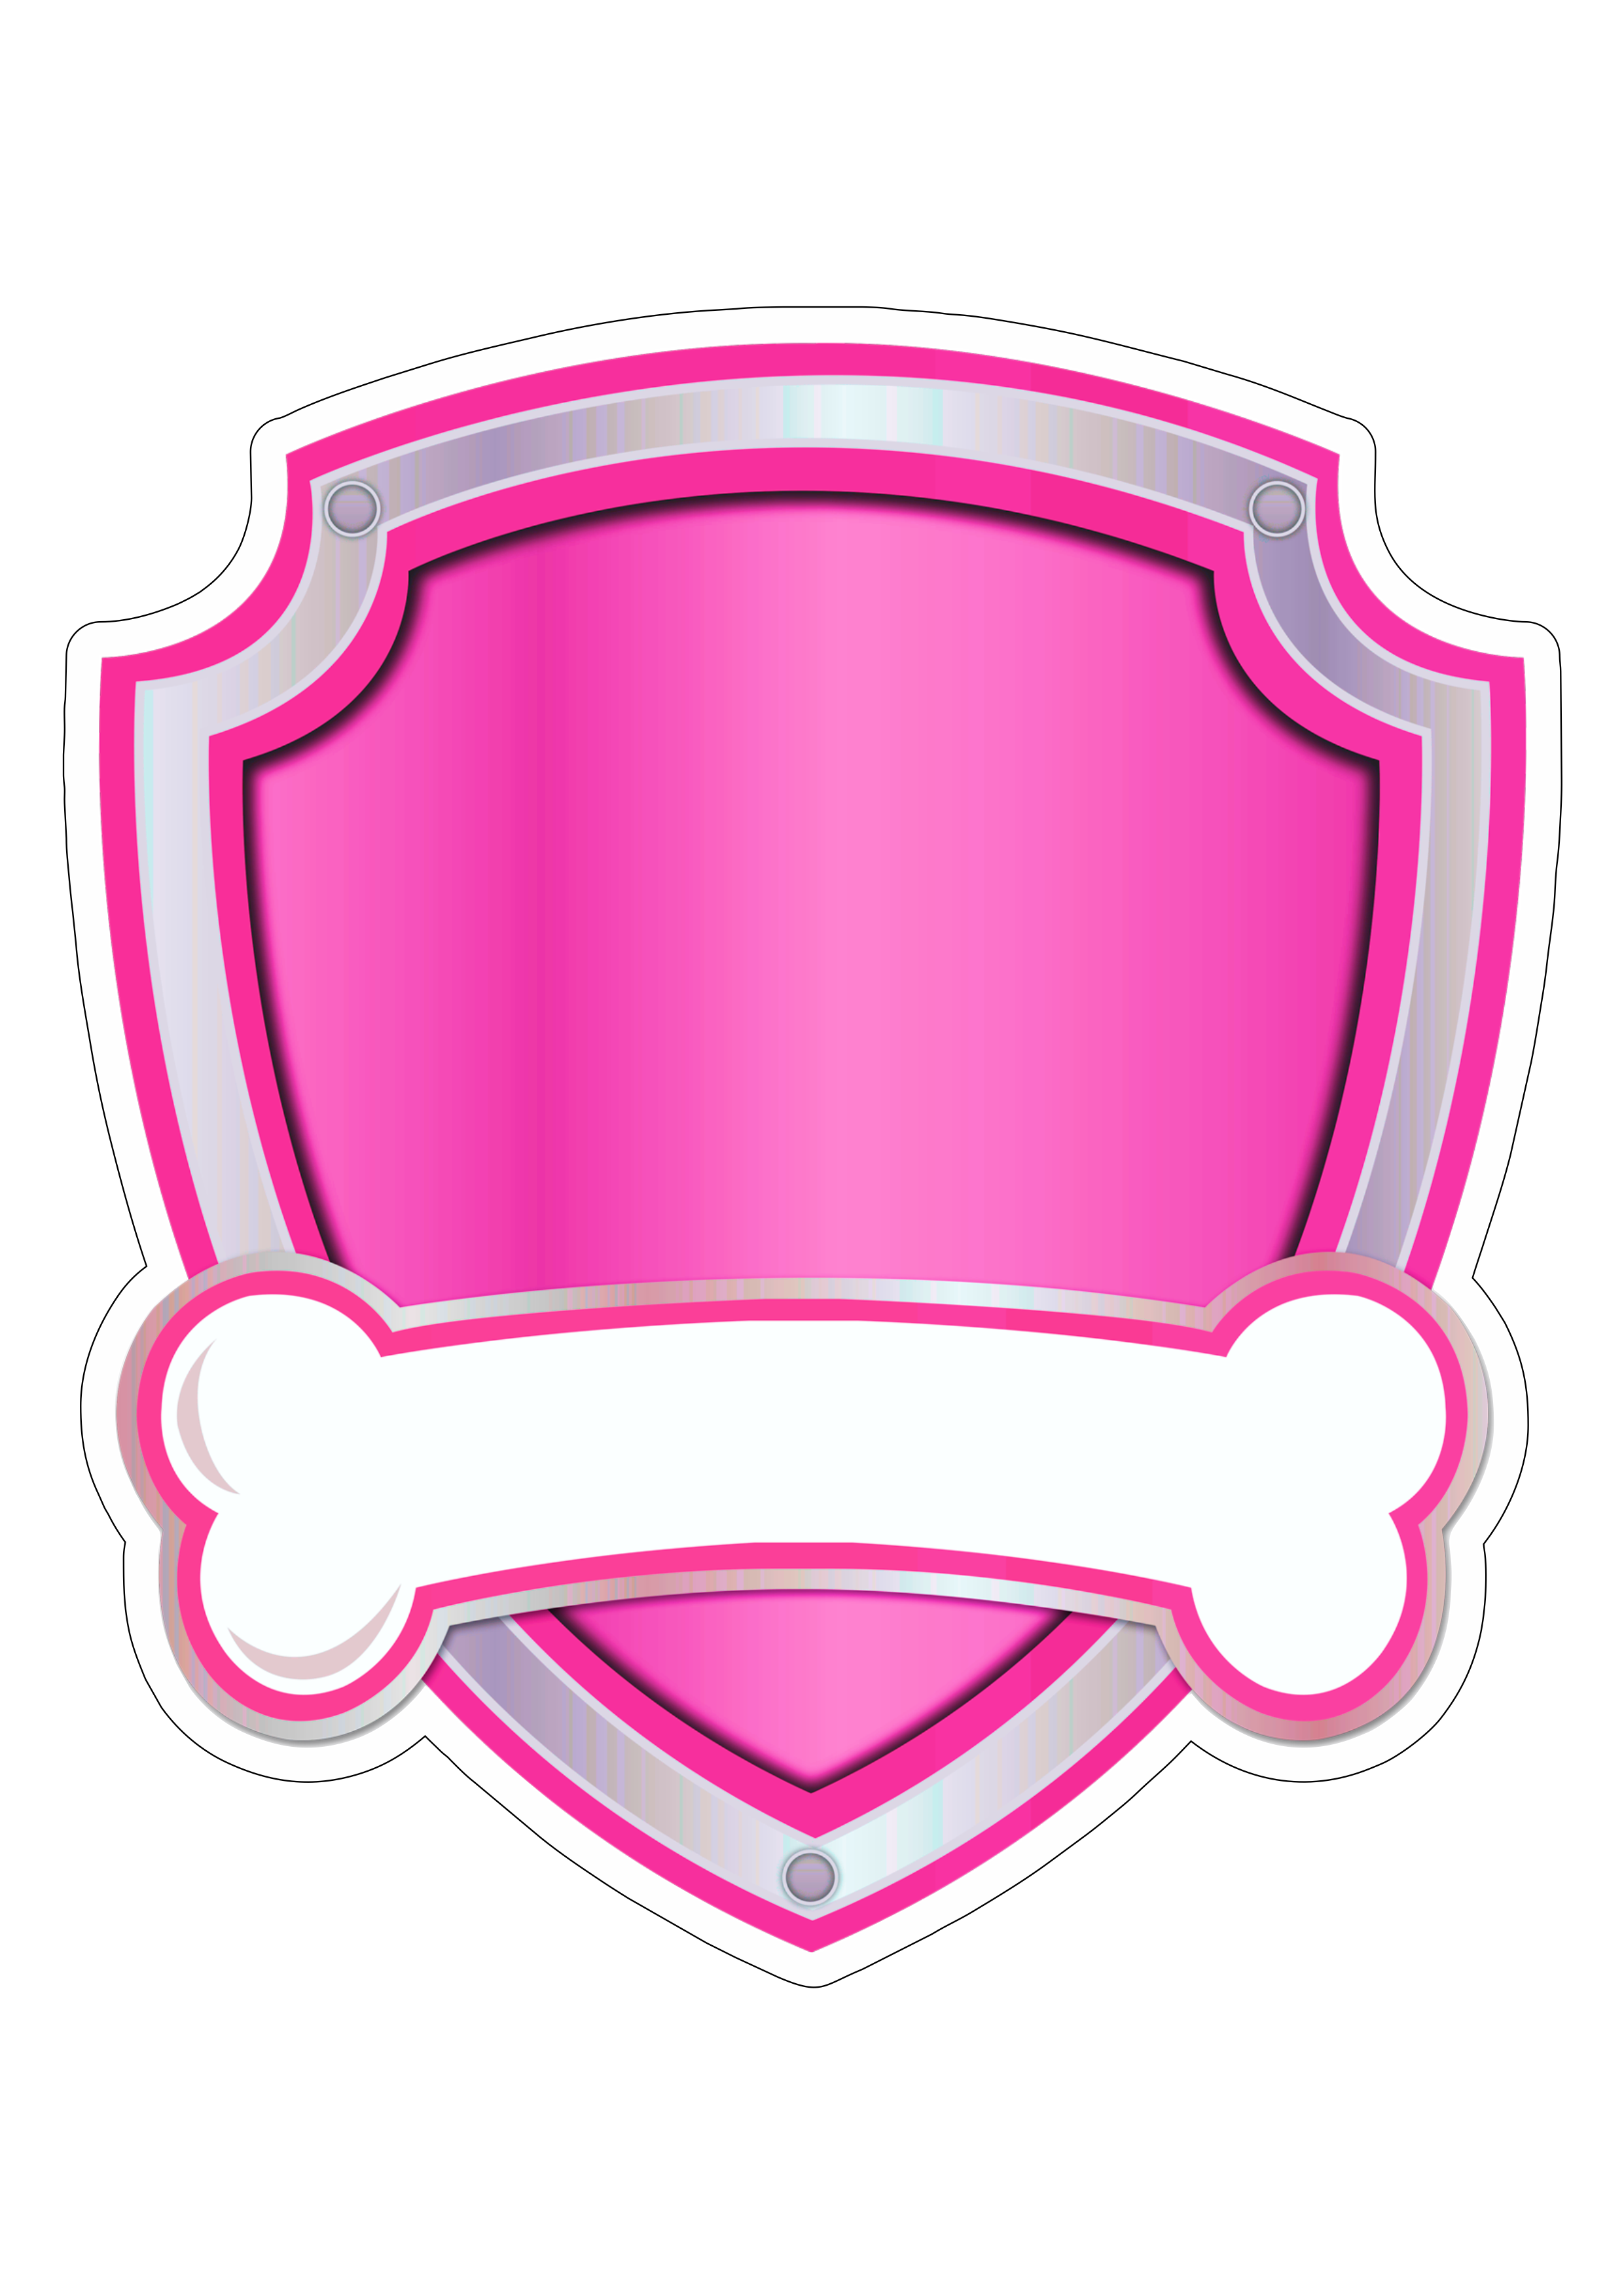 Logomarca patrulha canina rosa paw patrol desenho animado artes gráficas imagem fundo transparente com contorno pack de imagens png